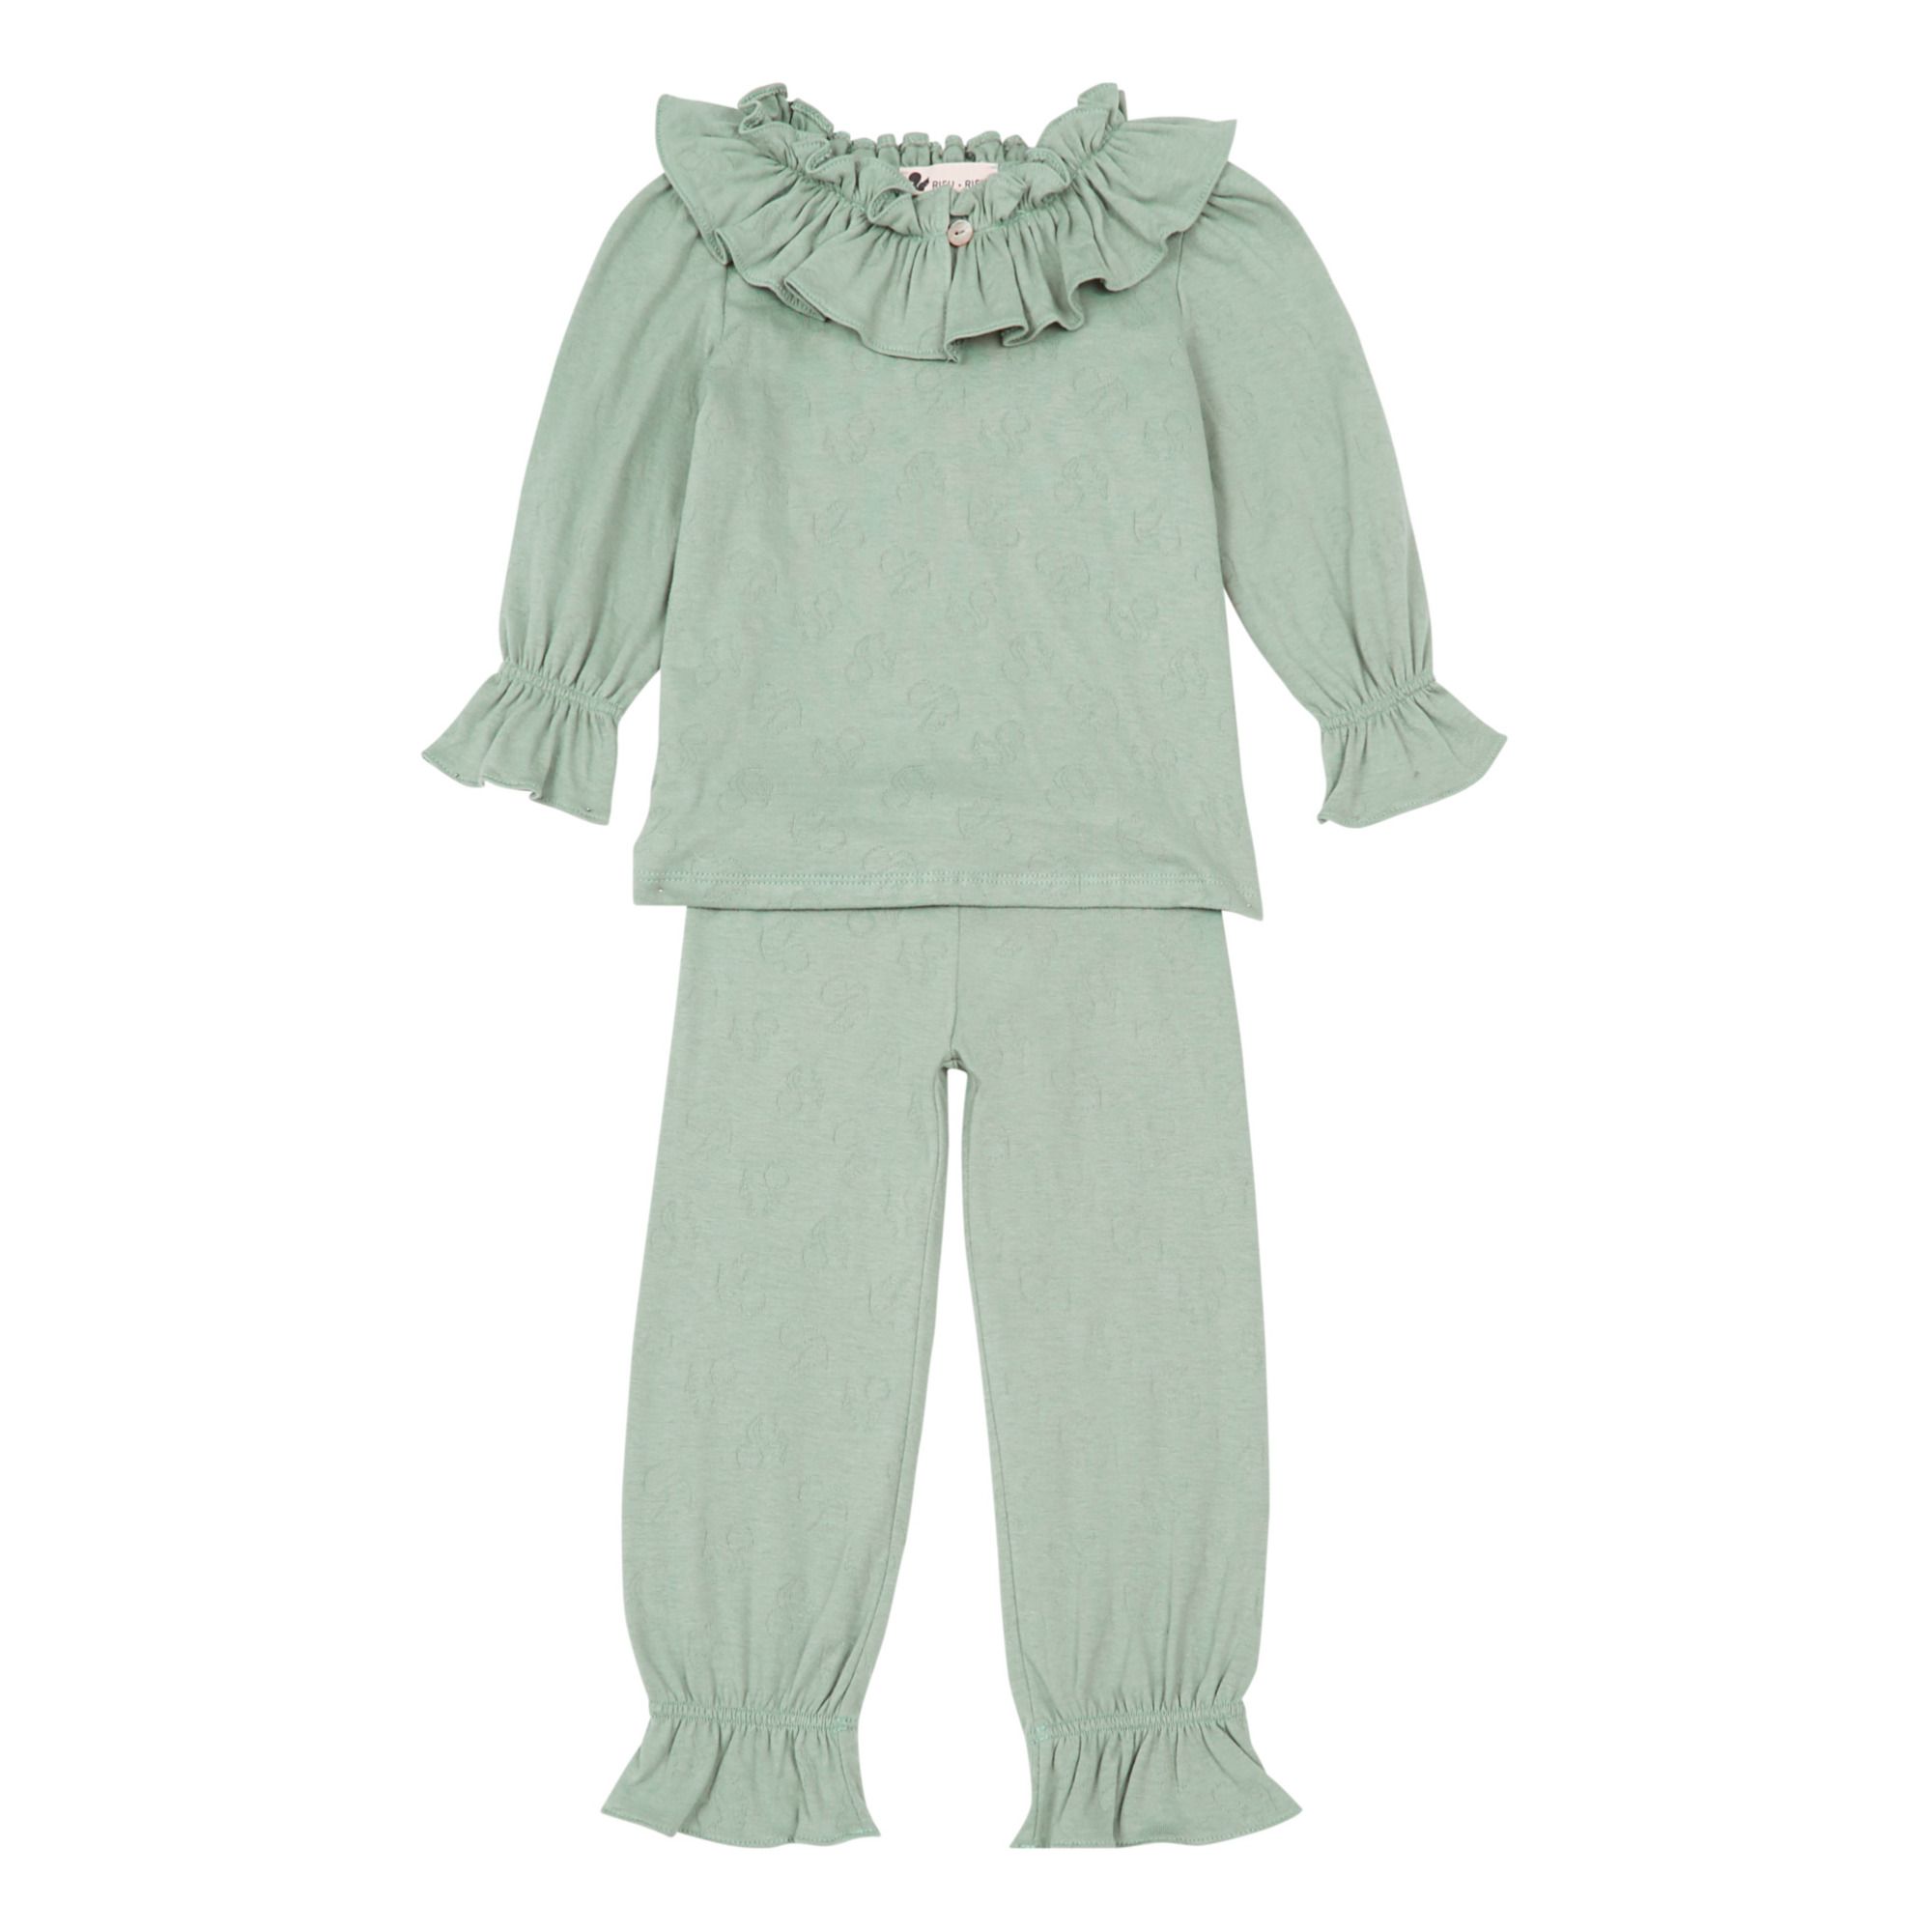 Risu Risu - Pyjama Colombine Coton Bio - Fille - Vert d'eau